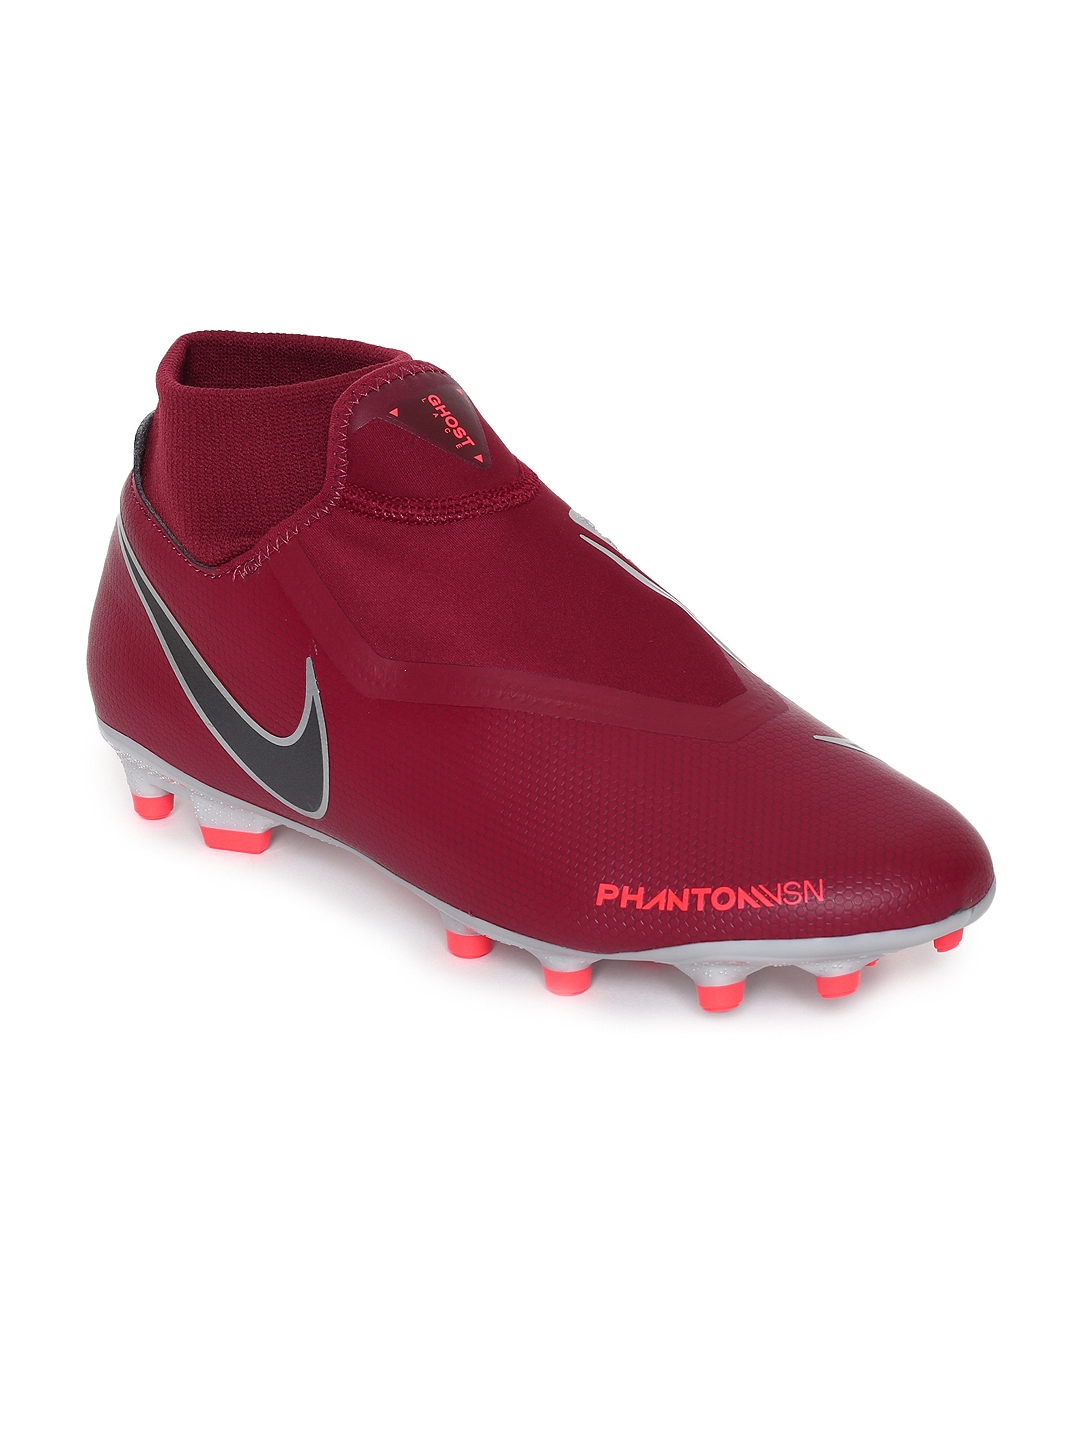 Nike Phantom VSN Elite DF AG Pro AO3261 600 . eBay